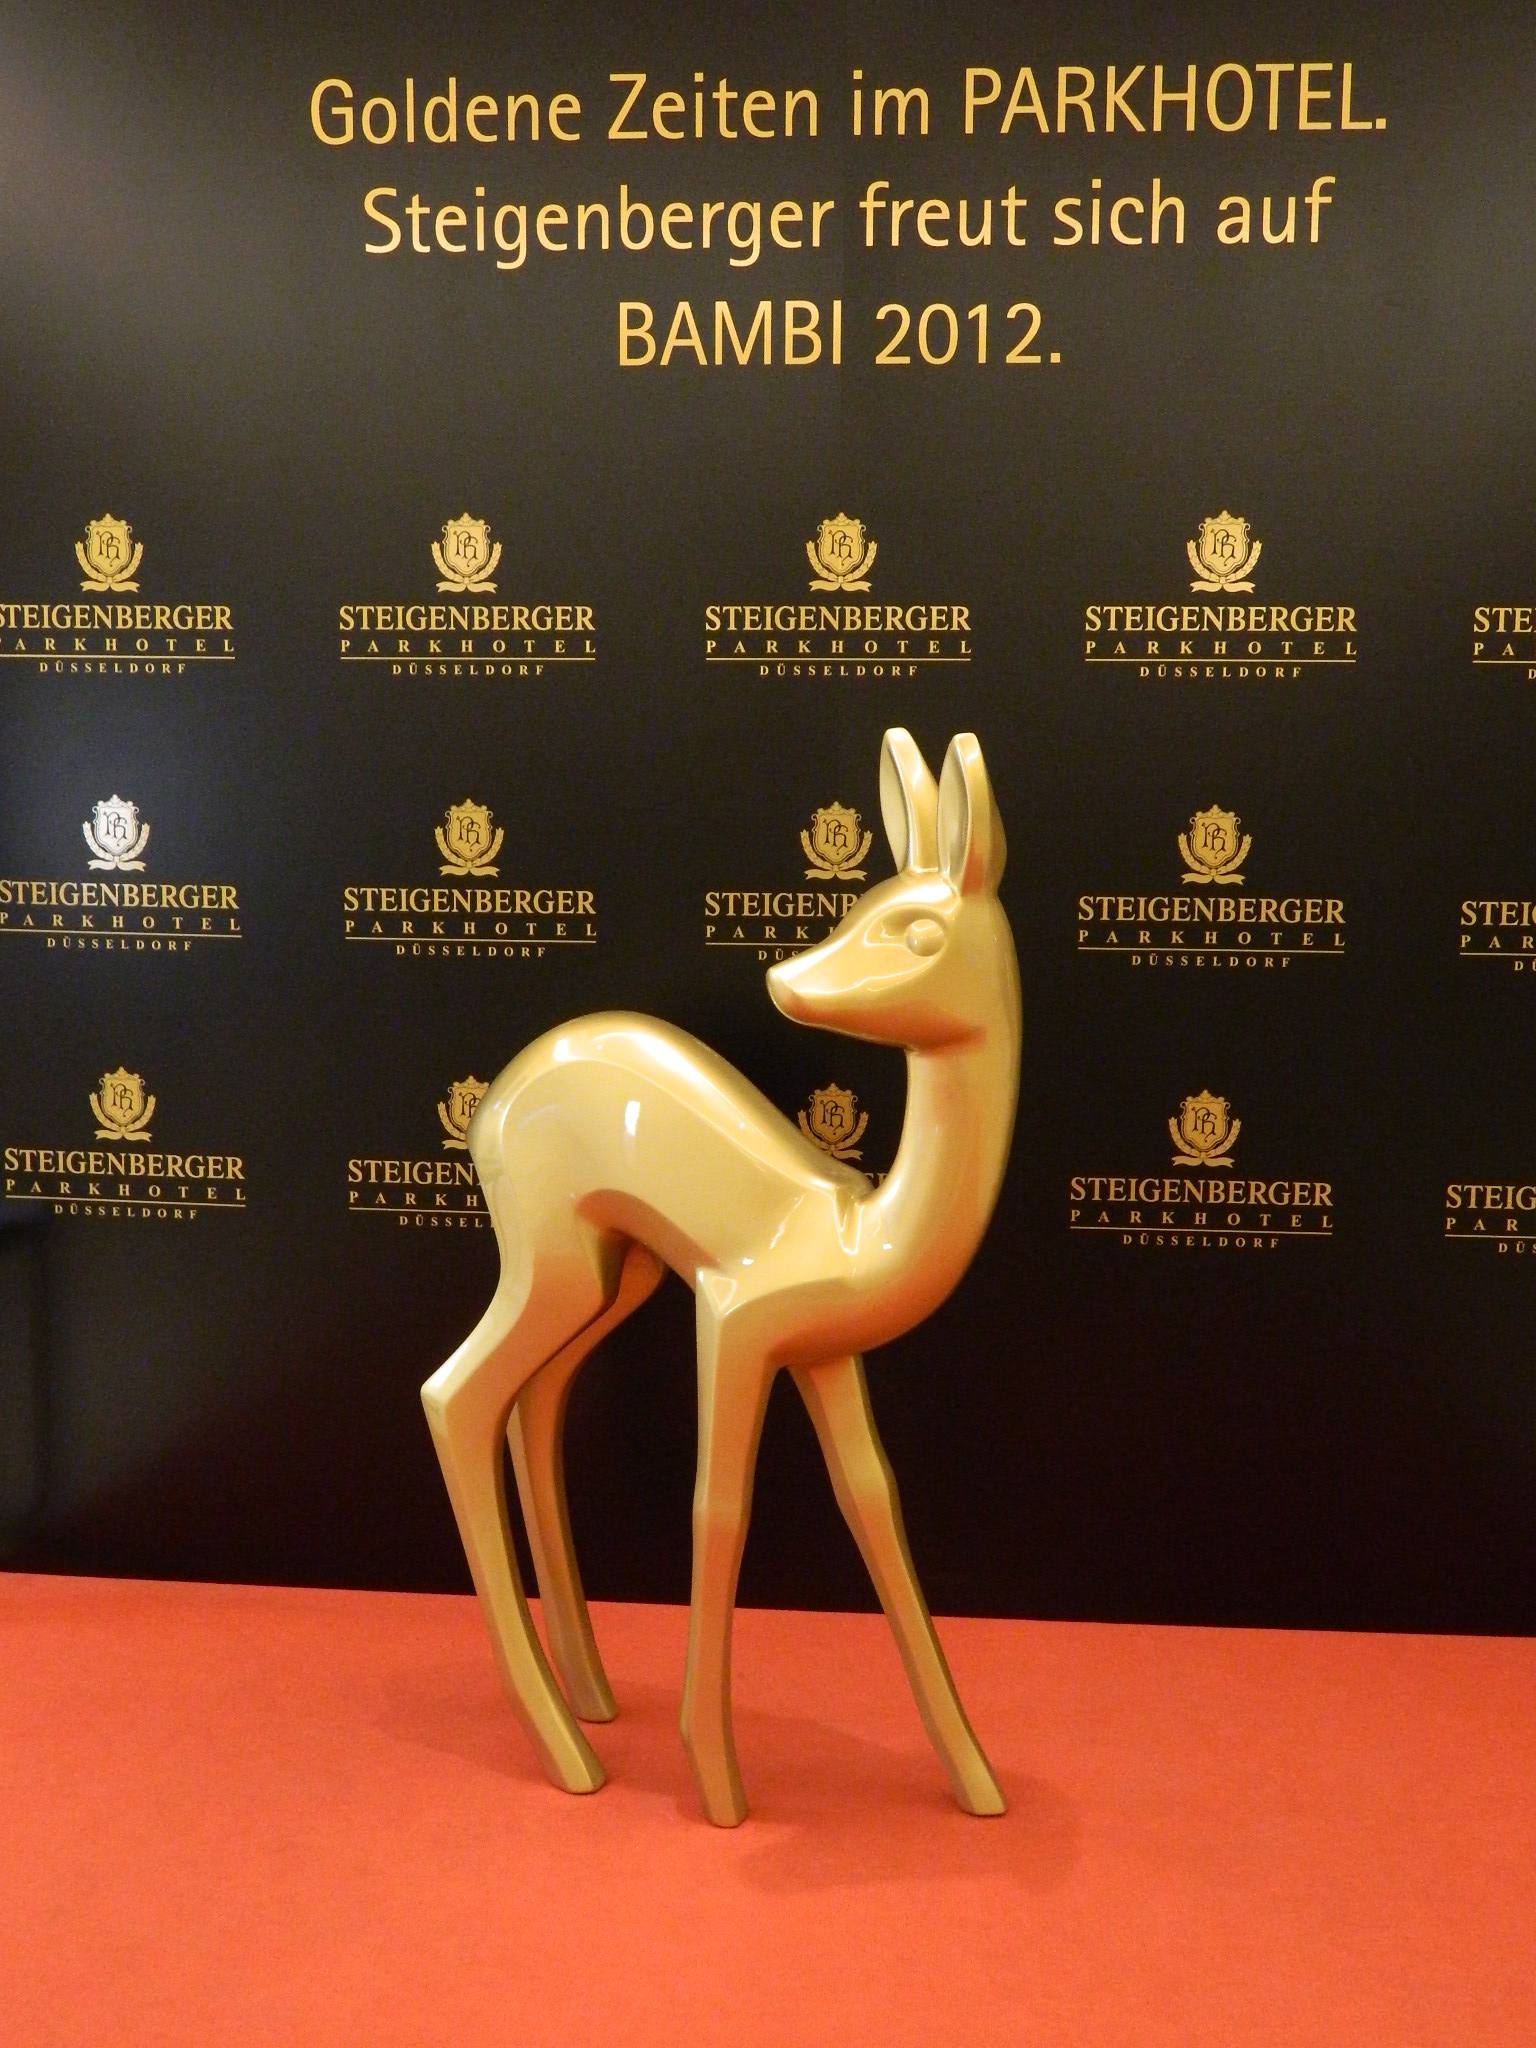 Auf diesem Bambi verewigen sich die prominenten Gäste des Steigenberger Parkhotel in Düsseldorf